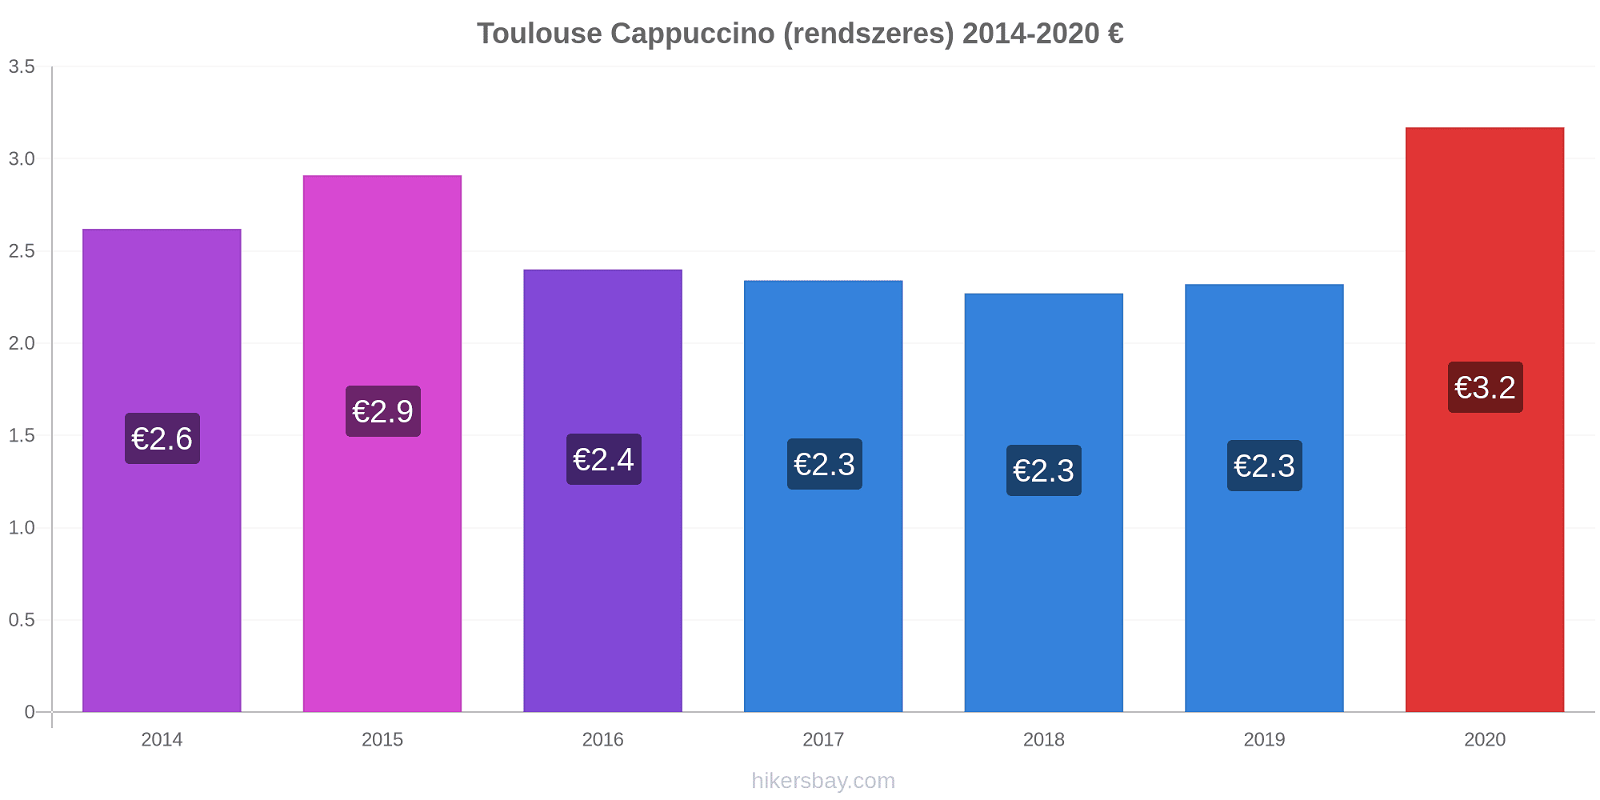 Toulouse árváltozások Cappuccino (rendszeres) hikersbay.com